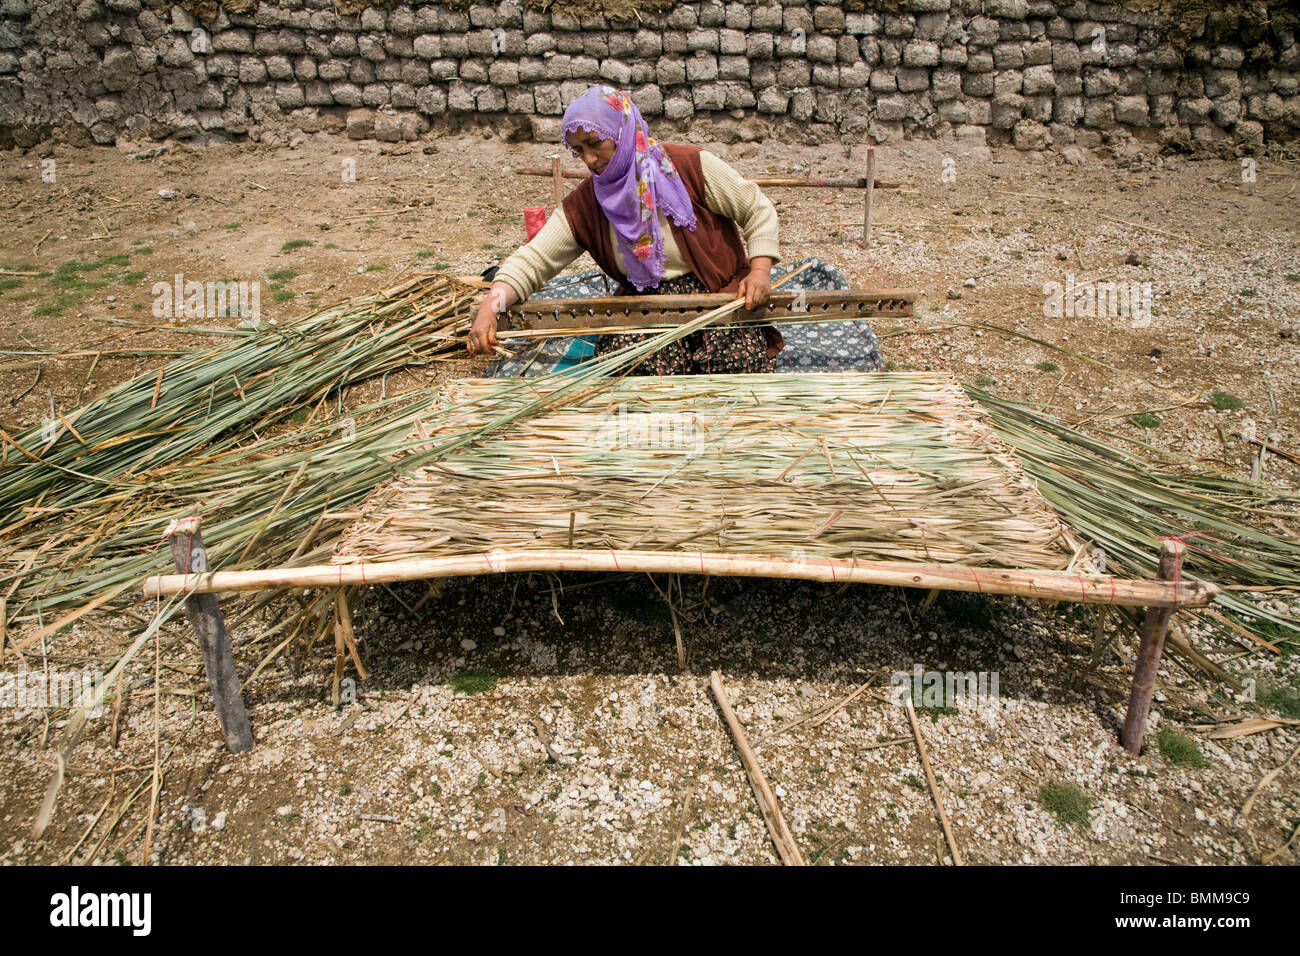 Frauen schlängelt Reed Matratze, Erciyes Türkei Stockfotografie - Alamy